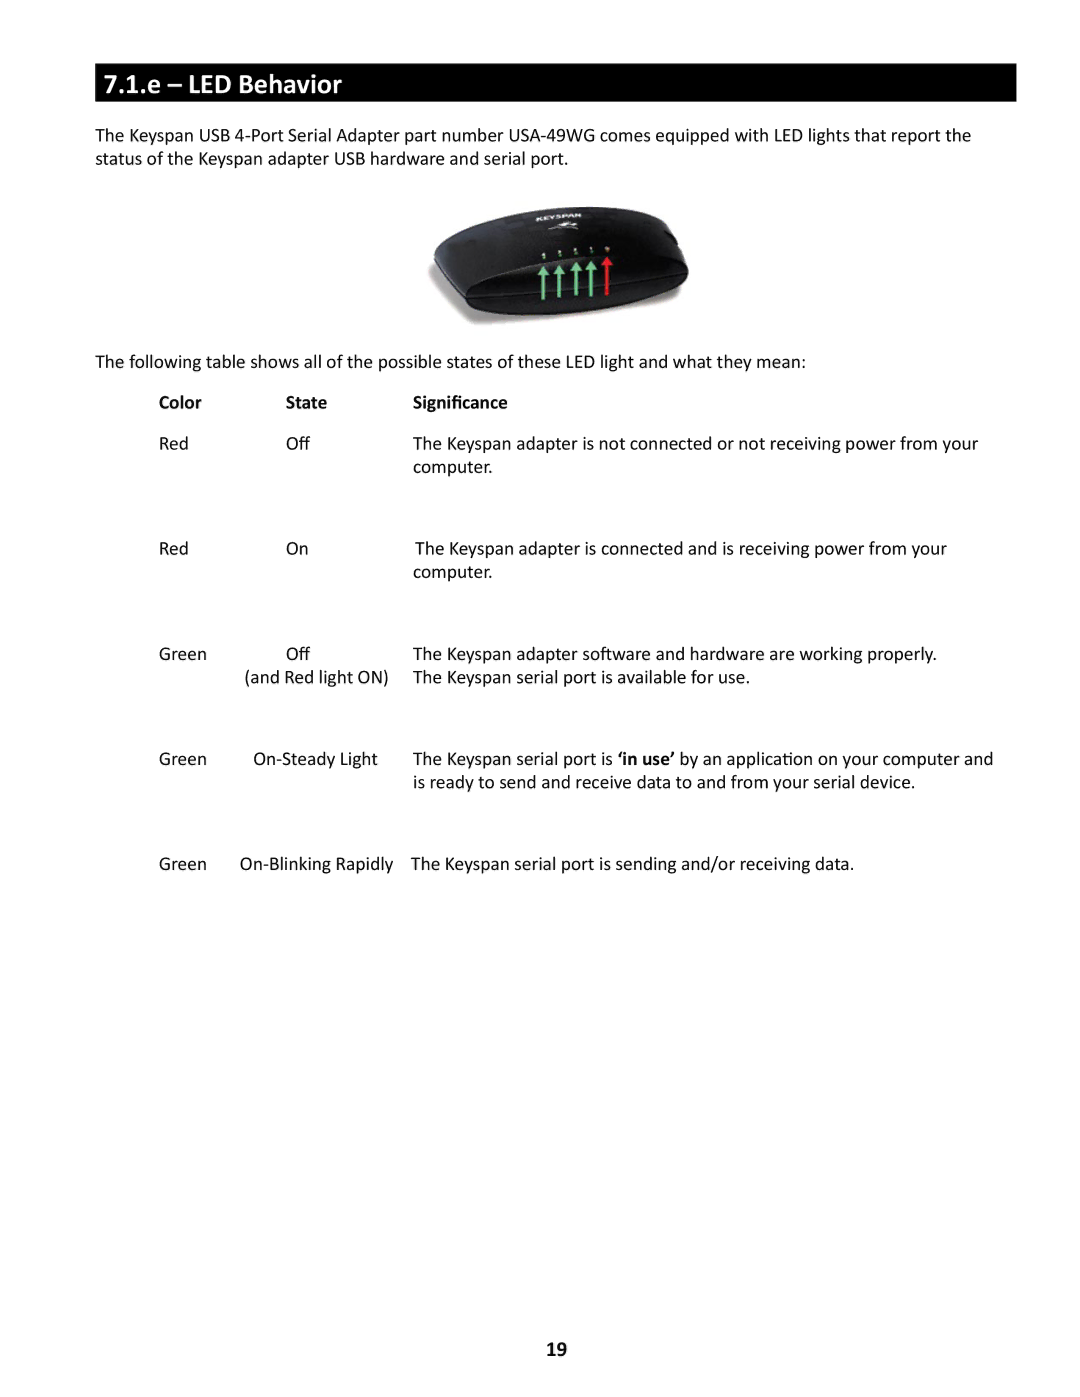 Keyspan USA-49WG owner manual LED Behavior, Color State Significance 